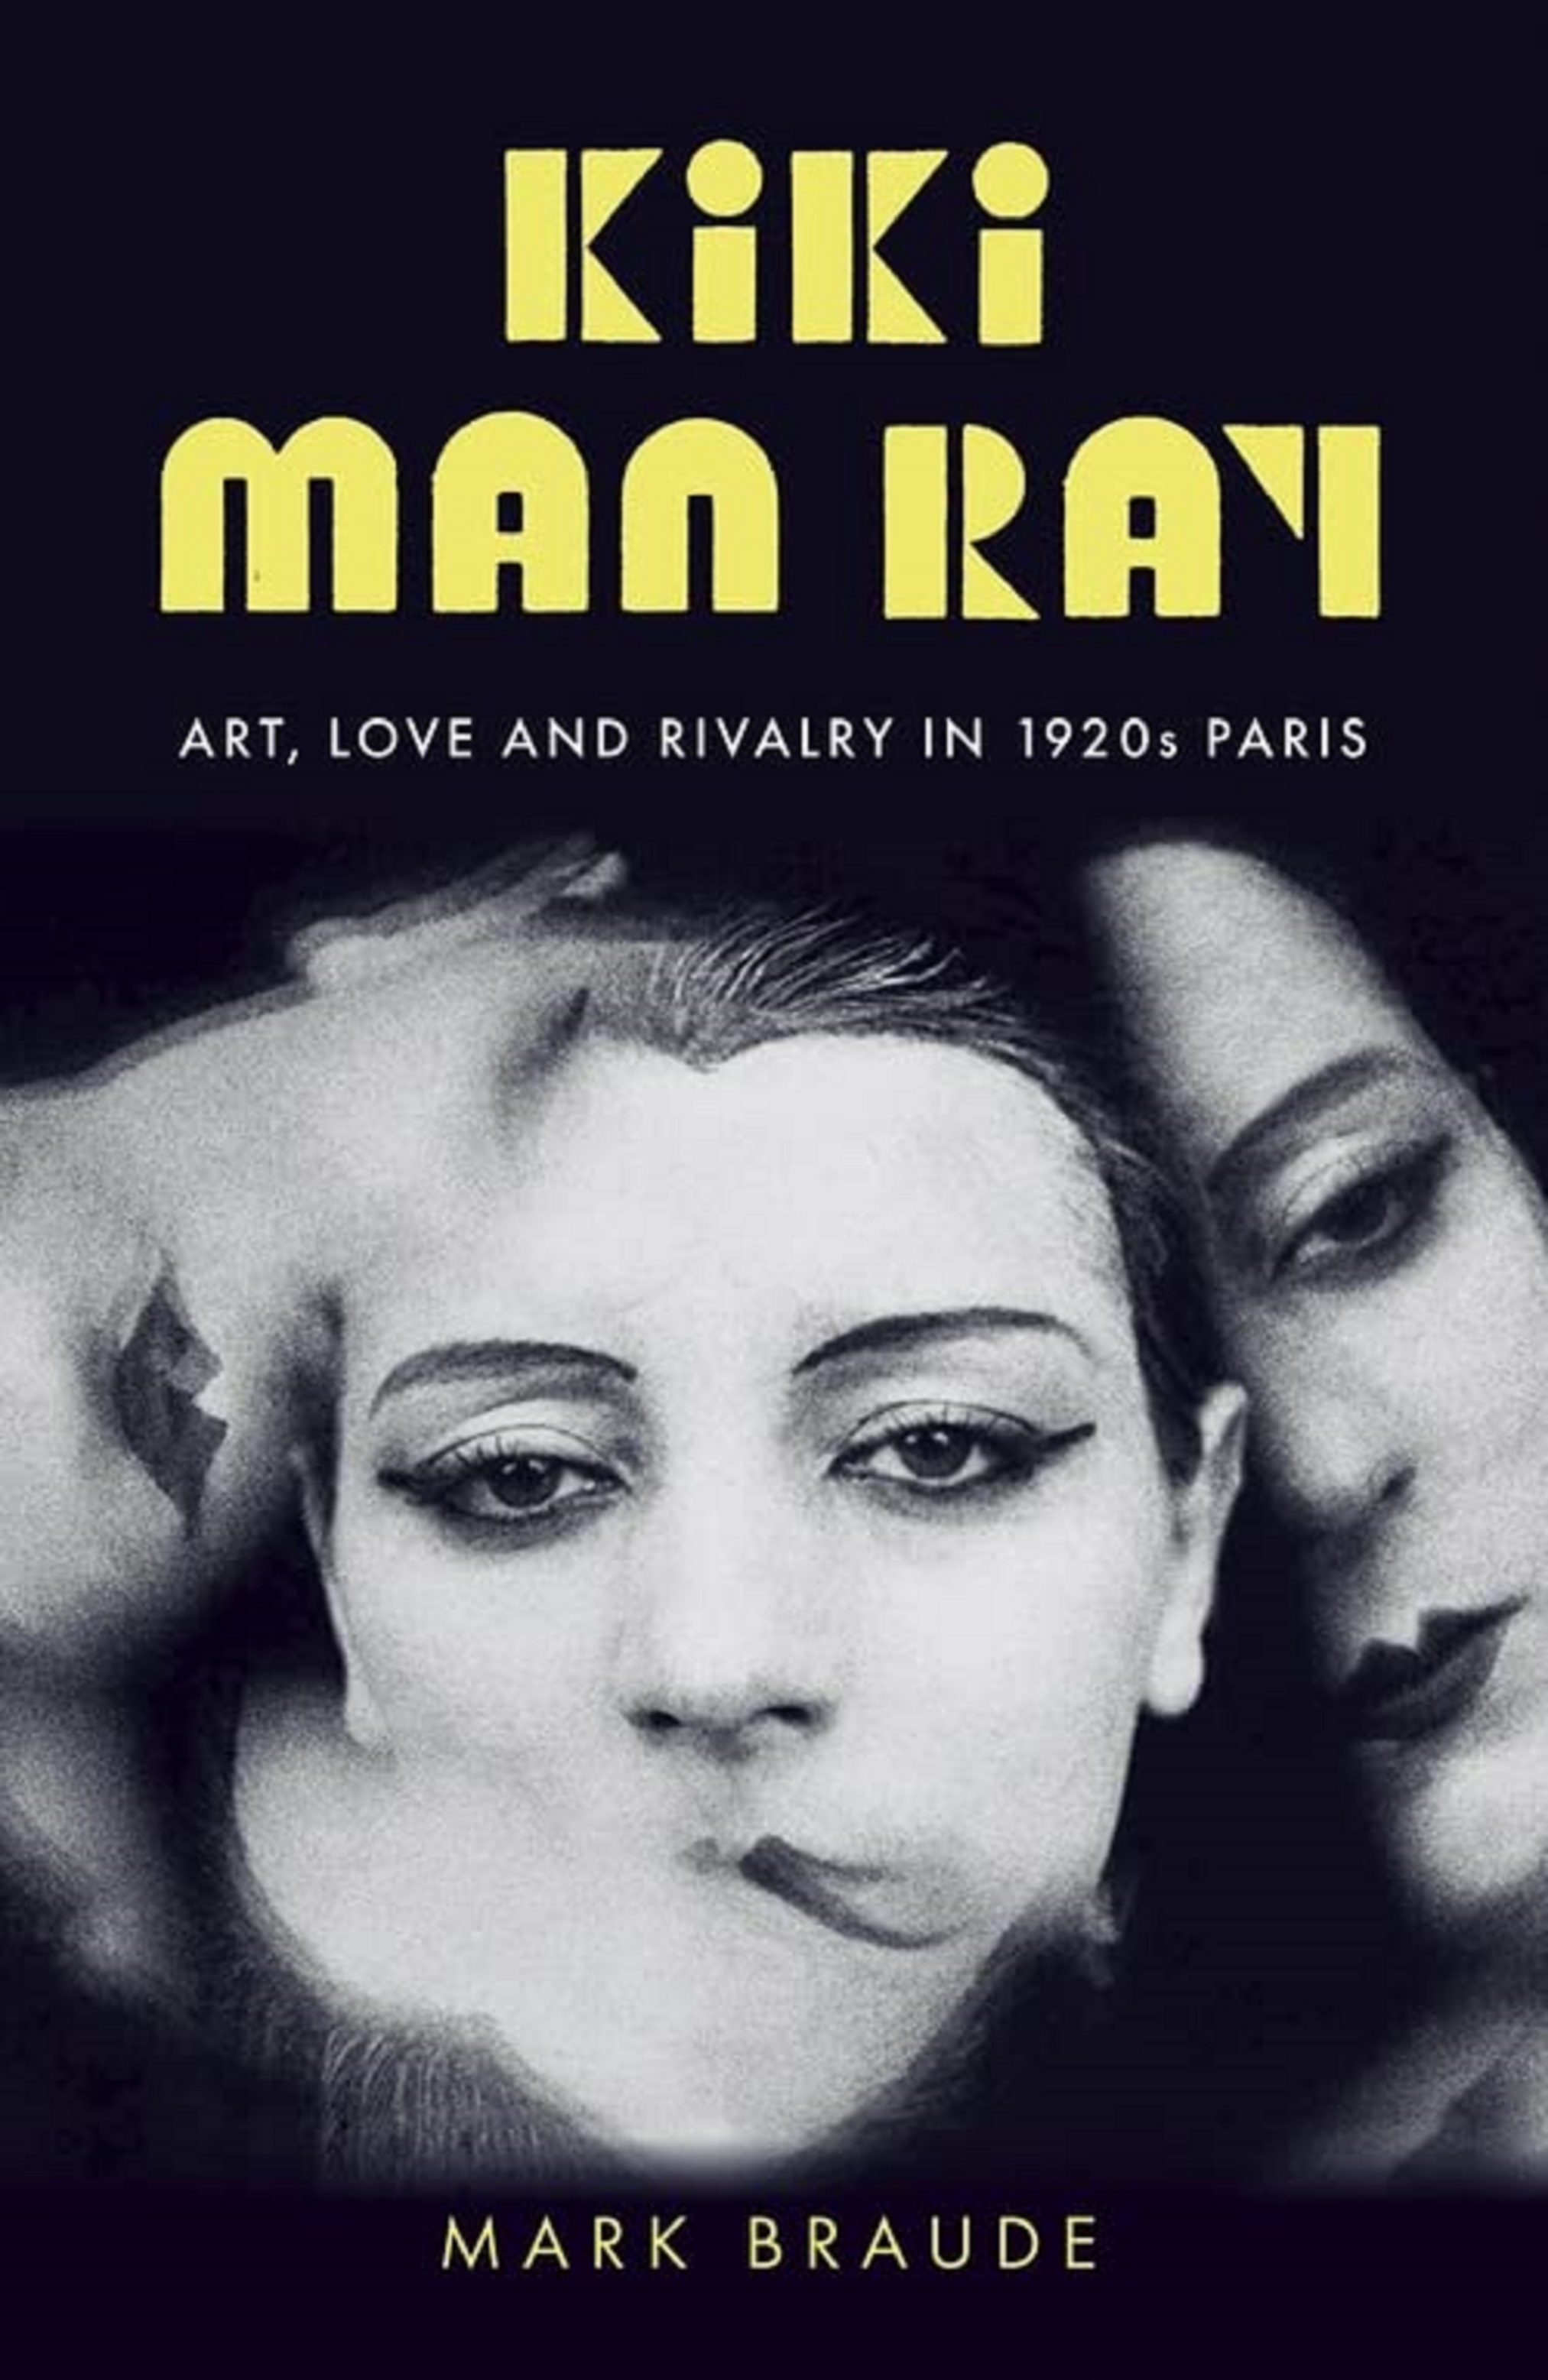 Kiki Man Ray | Mark Braude